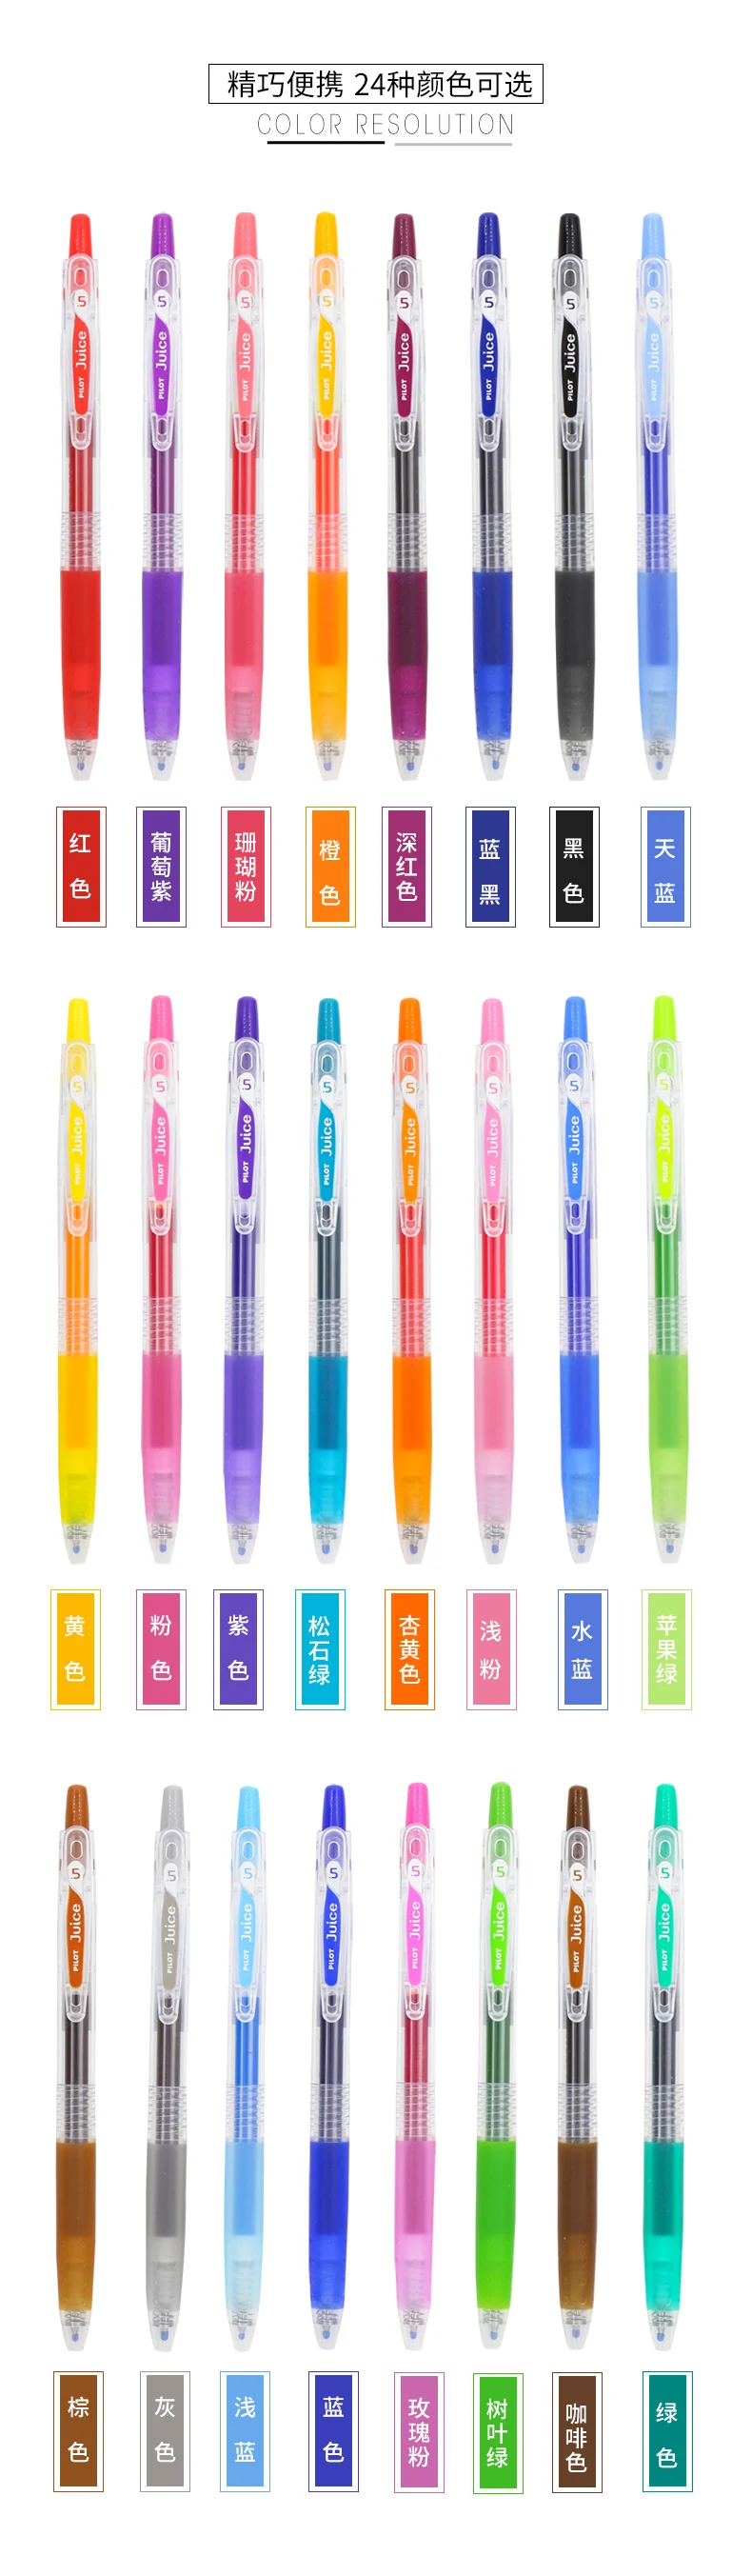 Ассорти 36 цветов Ручка Pilot Juice ручка Набор 0,5 мм японский Гель Шариковая LJU-10EF